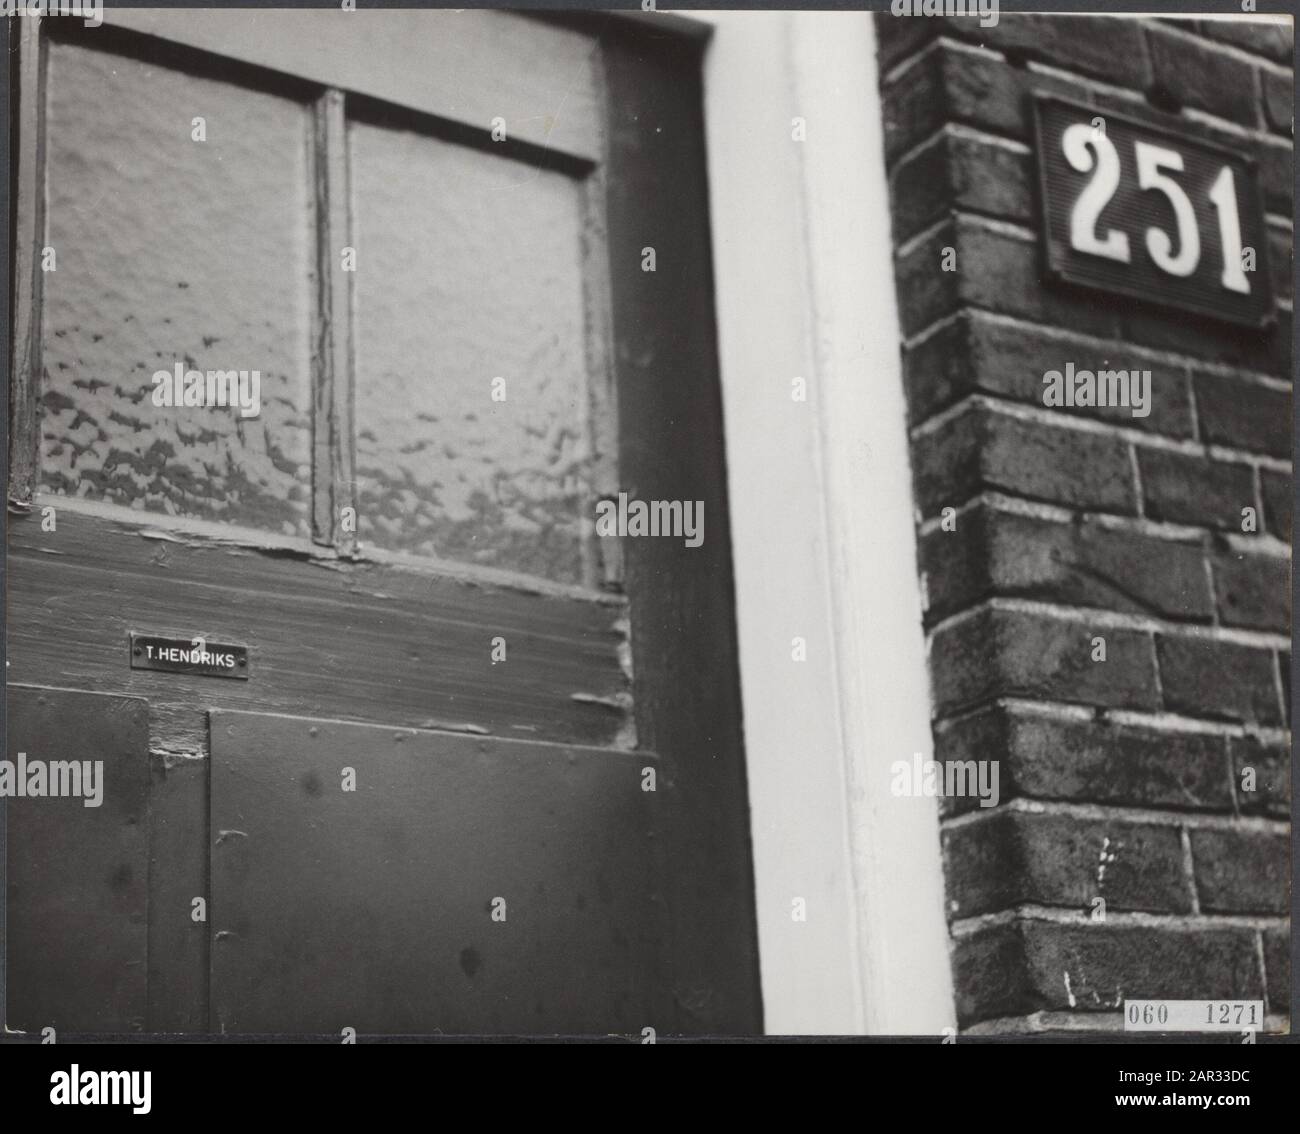 Accueil de la victime de l'étranglement Date: 14 janvier 1964 lieu: Nijmegen mots clés: KILDS, Disabled, homes Nom personnel: Hendriks mw t Banque D'Images